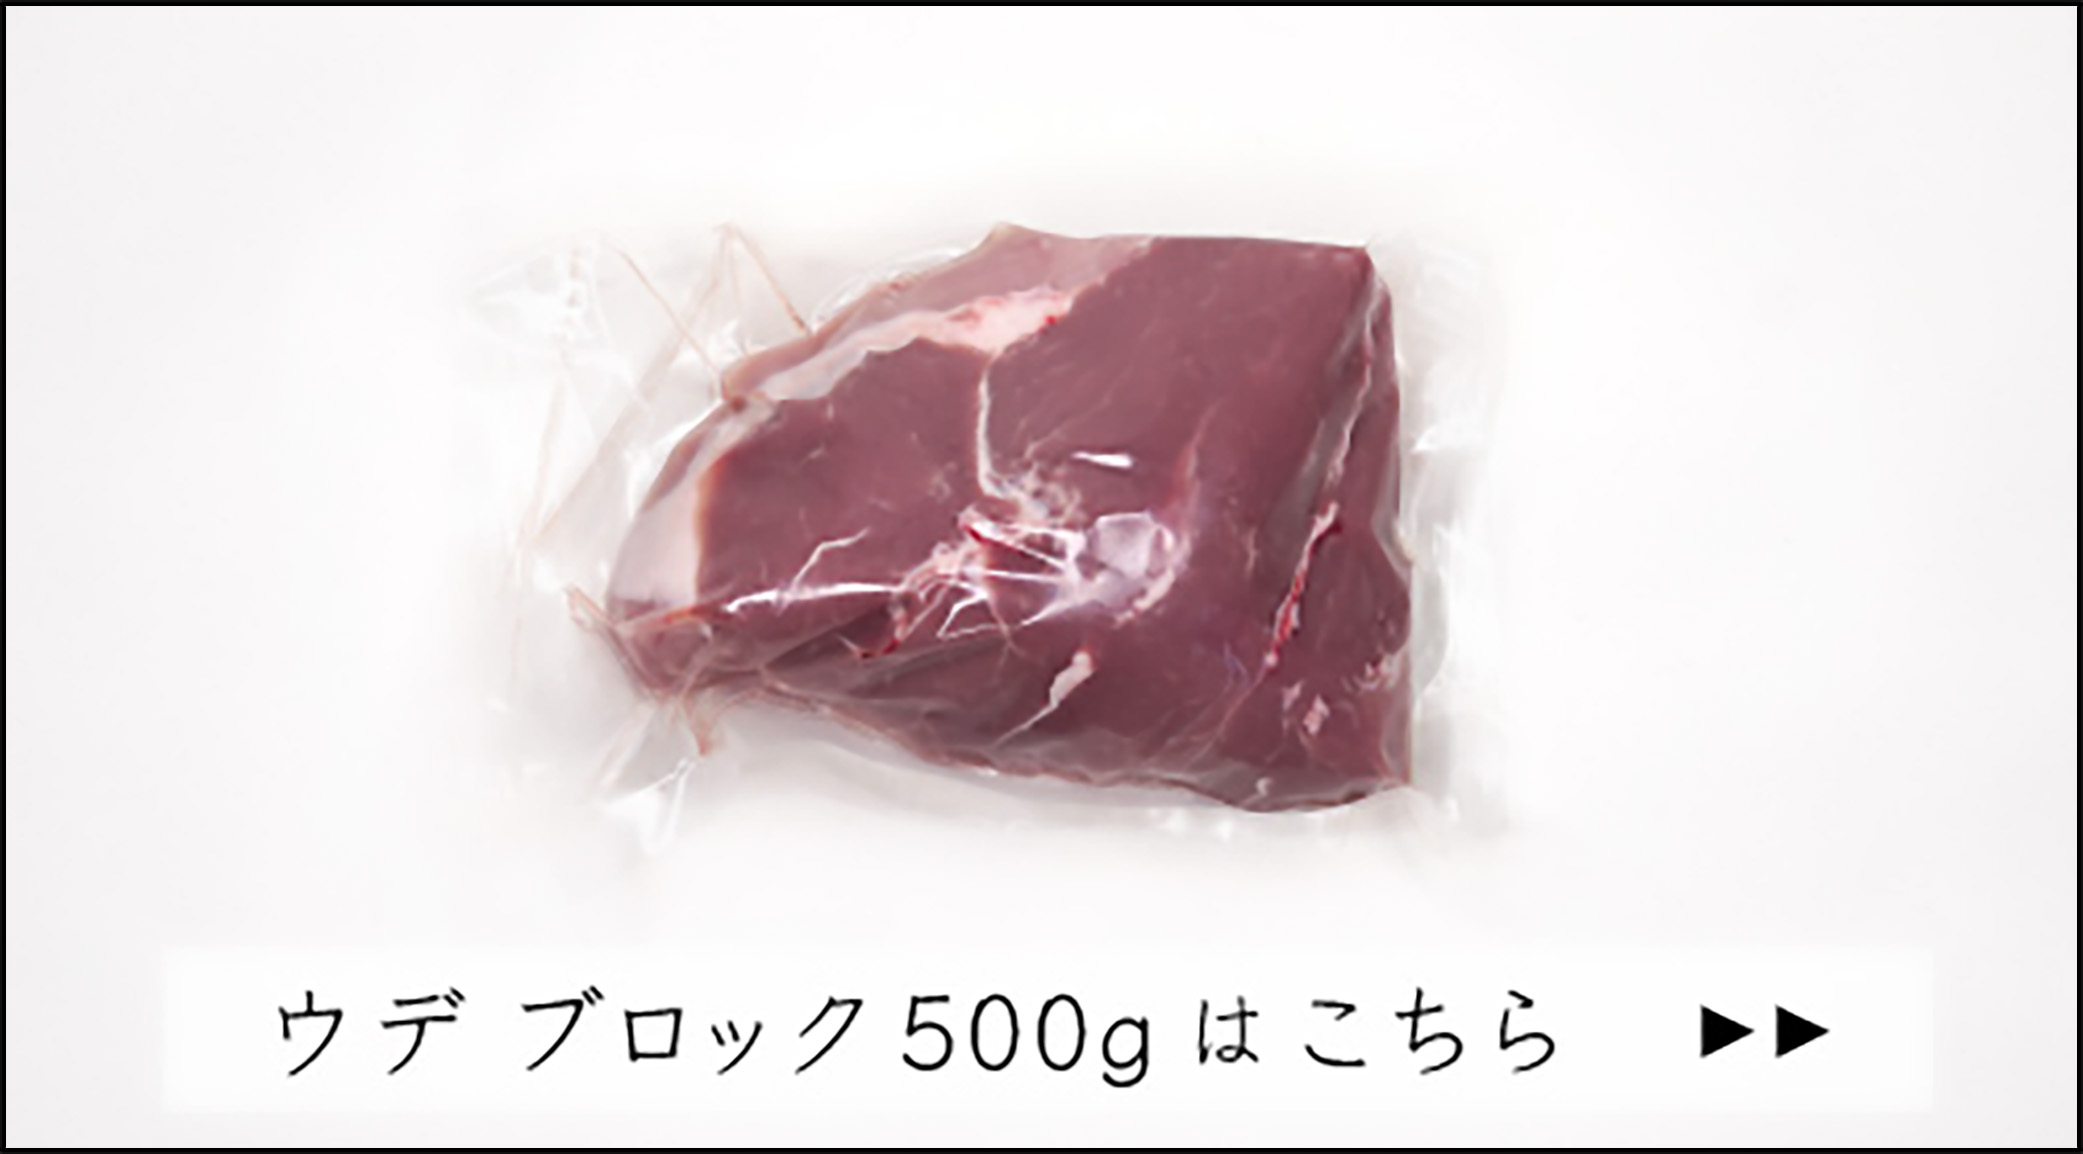 JAPAN X,ジャパンエックス,モモ,モモ肉,もも,もも肉,豚もも,豚モモ肉　焼き肉,焼き肉用,ロース,ろーす,焼き肉用,モモ ブロック500gはこちら